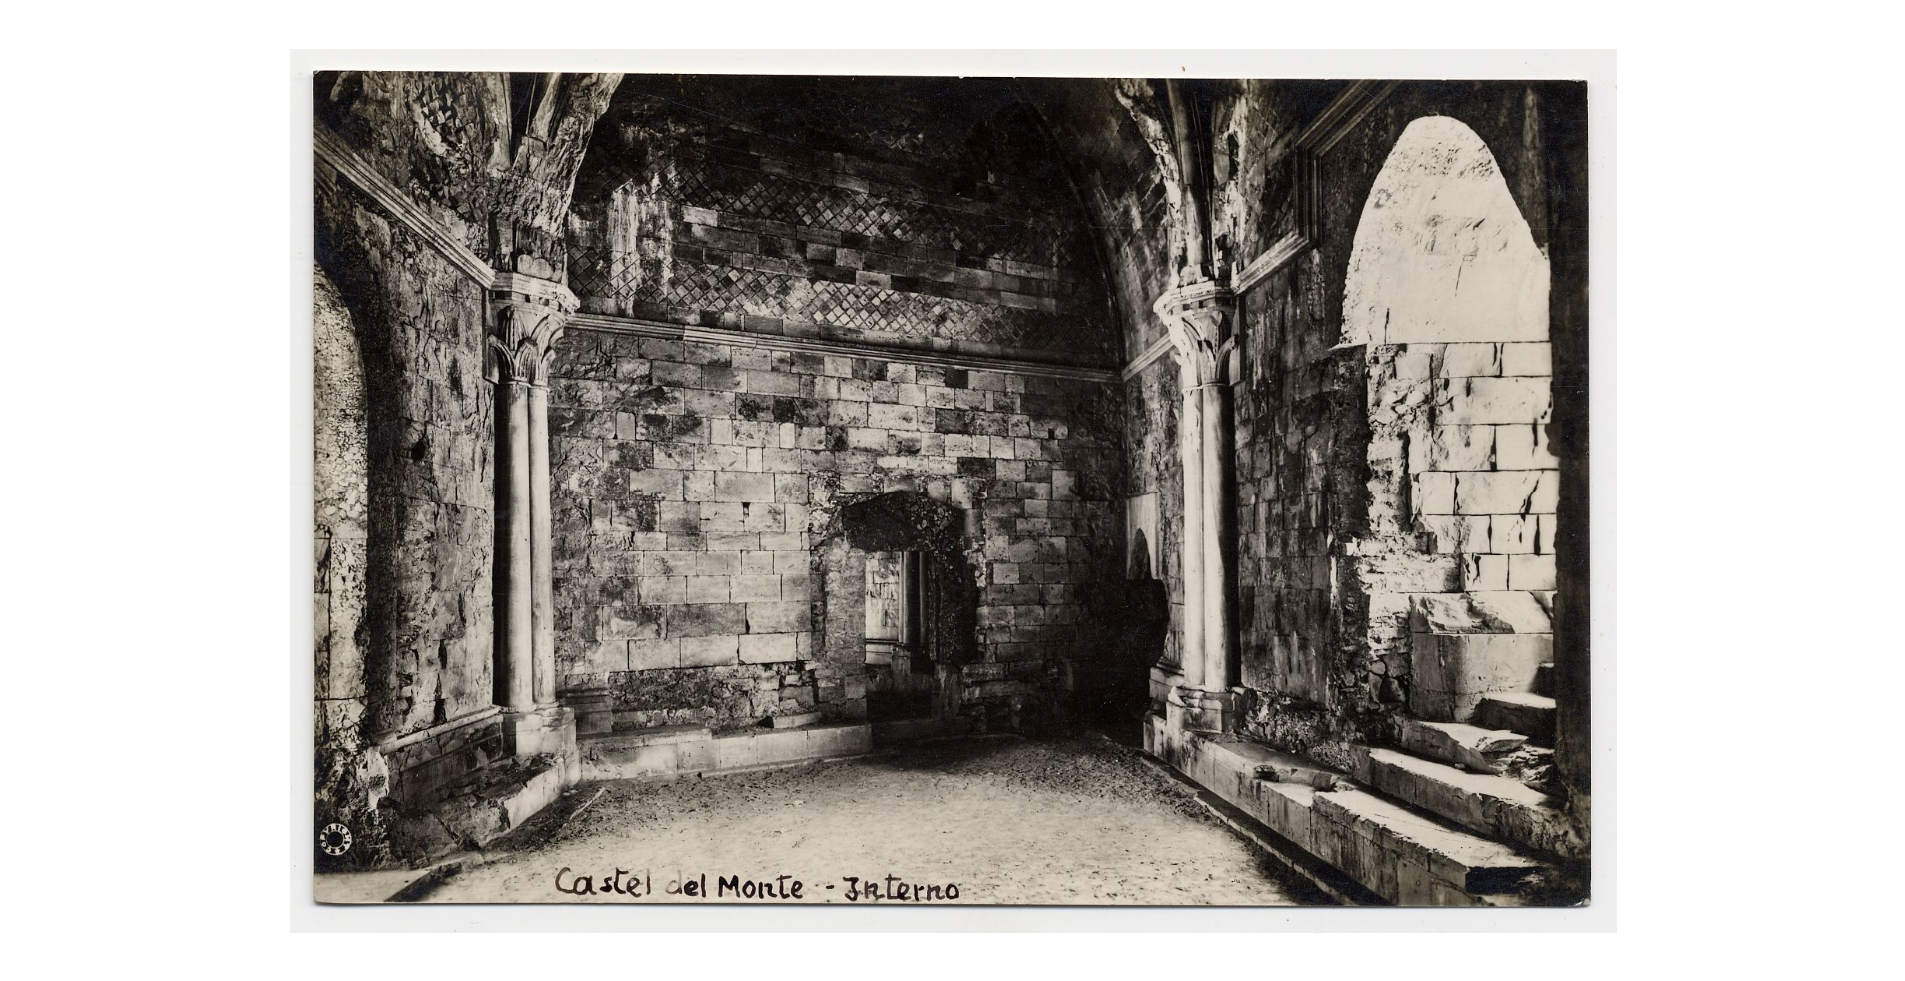 Fotografo non identificato, Andria - Castel del Monte - Interno, 1920-1930, cartolina, FFC005078